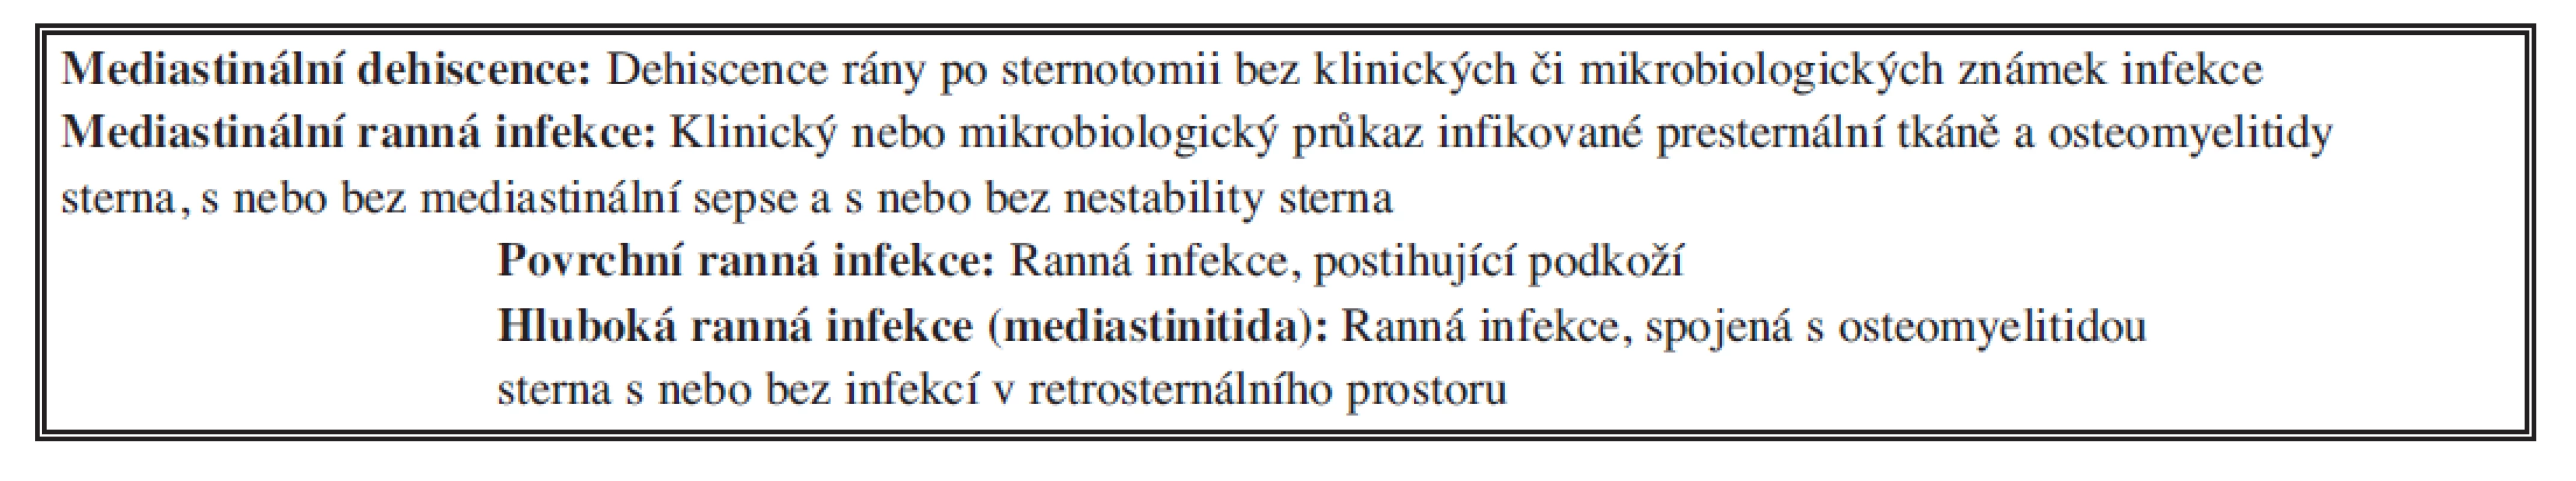 Klasifikace komplikací po sternotomii [2]
Tab. 2. Classification of complications following sternotomy [2]